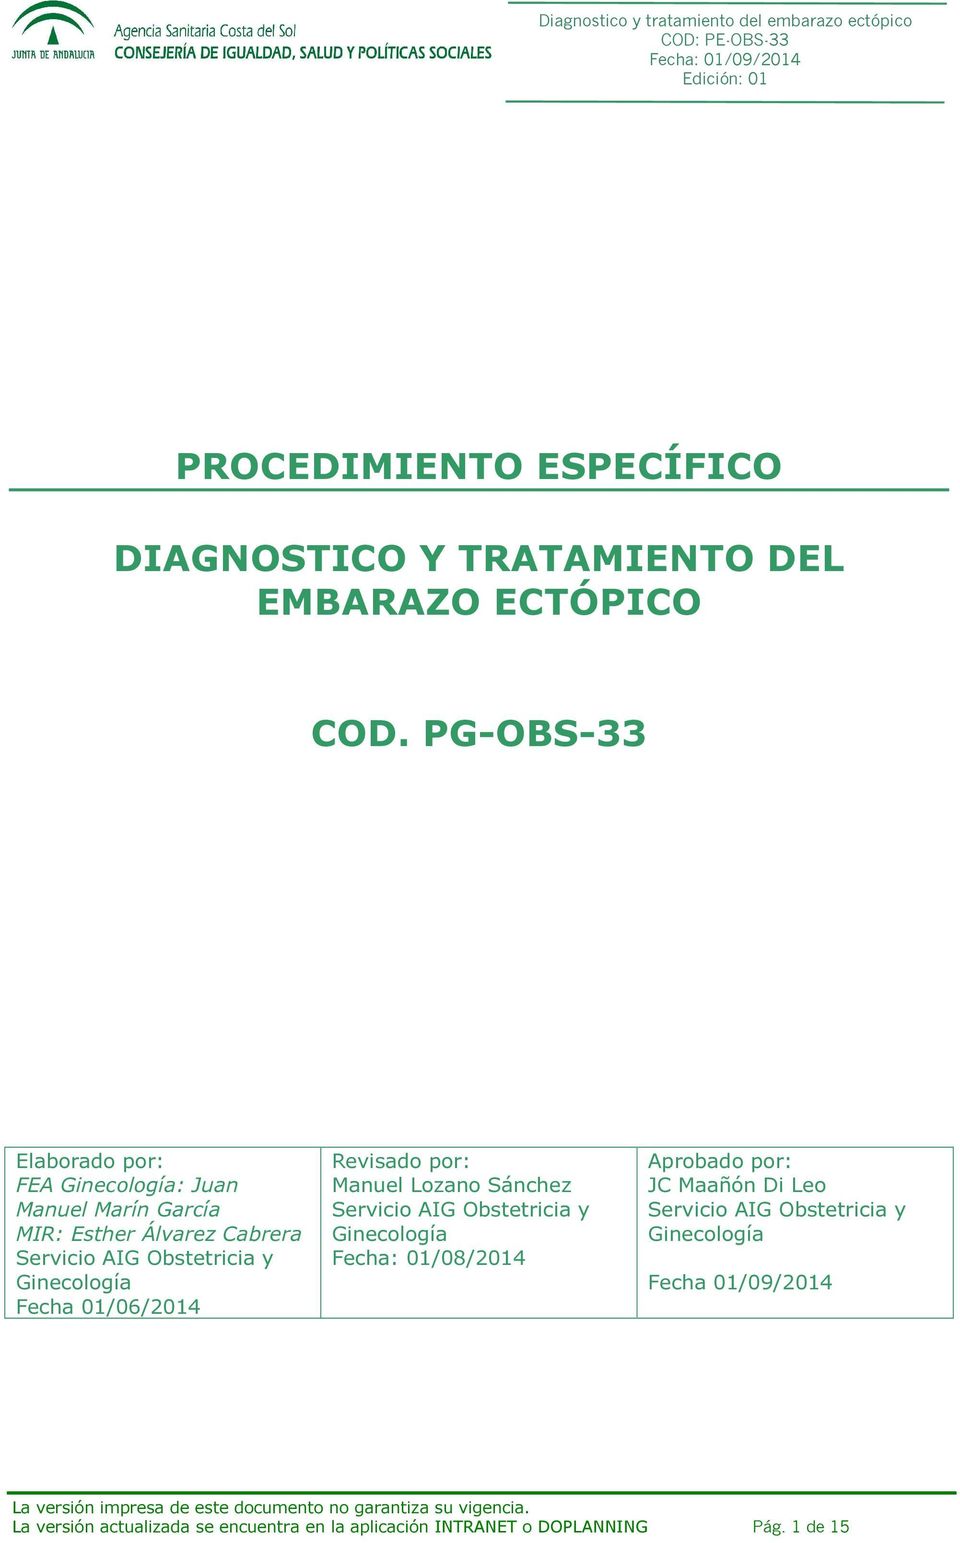 Ginecología Fecha 01/06/2014 Revisado por: Manuel Lozano Sánchez Servicio AIG Obstetricia y Ginecología Fecha: 01/08/2014